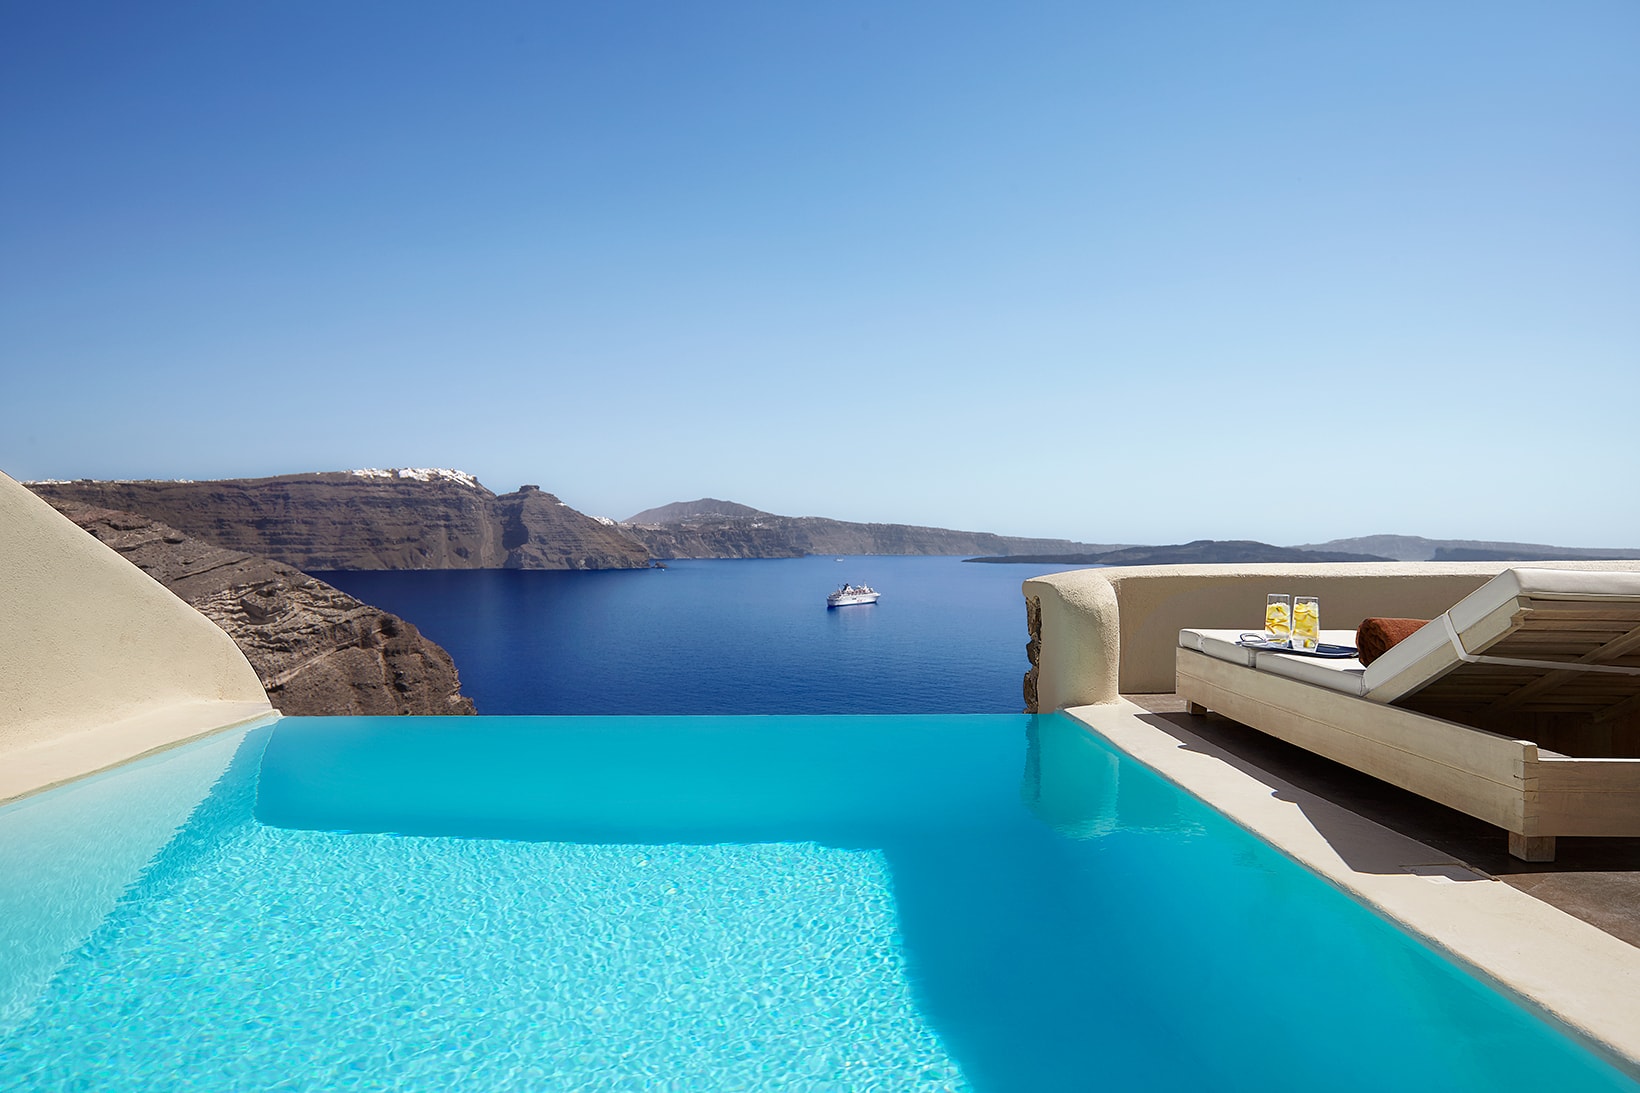 Mystique Hotel Santorini Greece Travel Interior Villas Suites pool sea